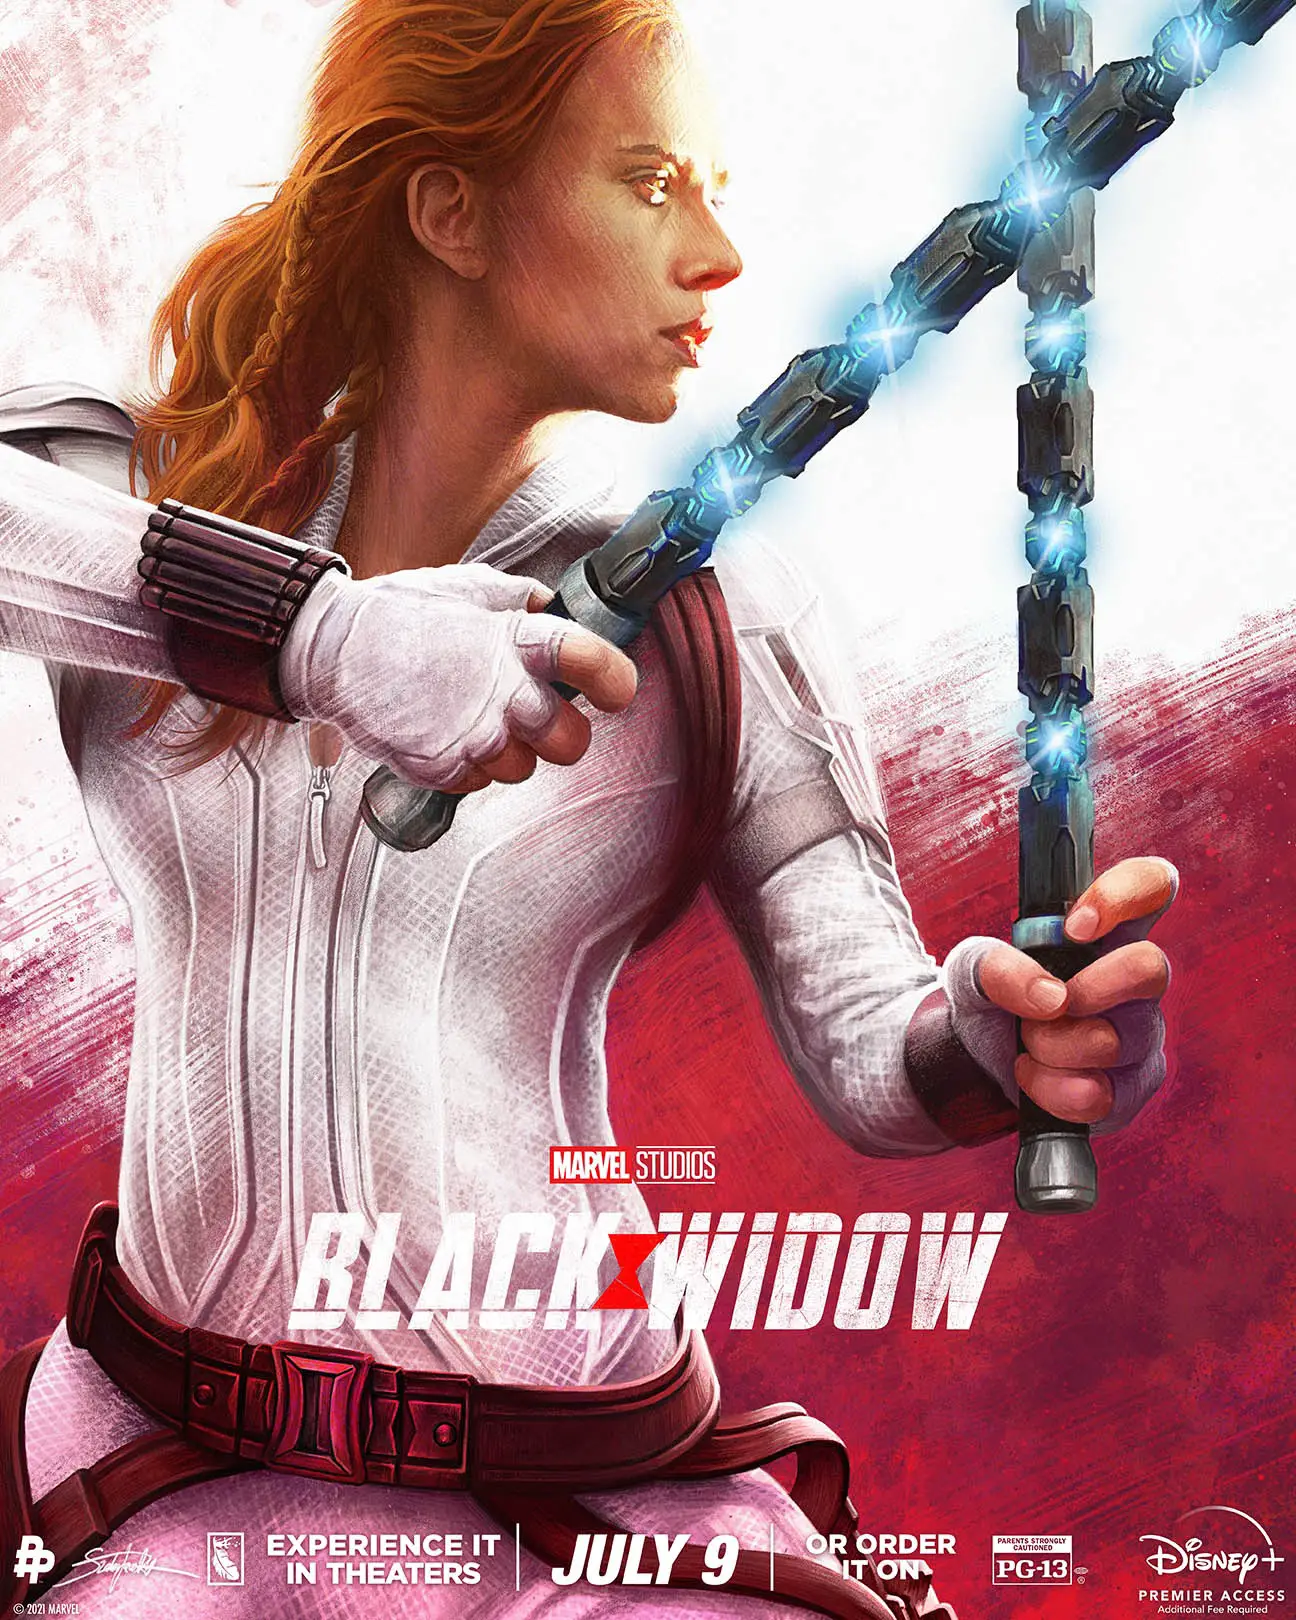 Black Widow Poster MarvelBlog News for September 6th